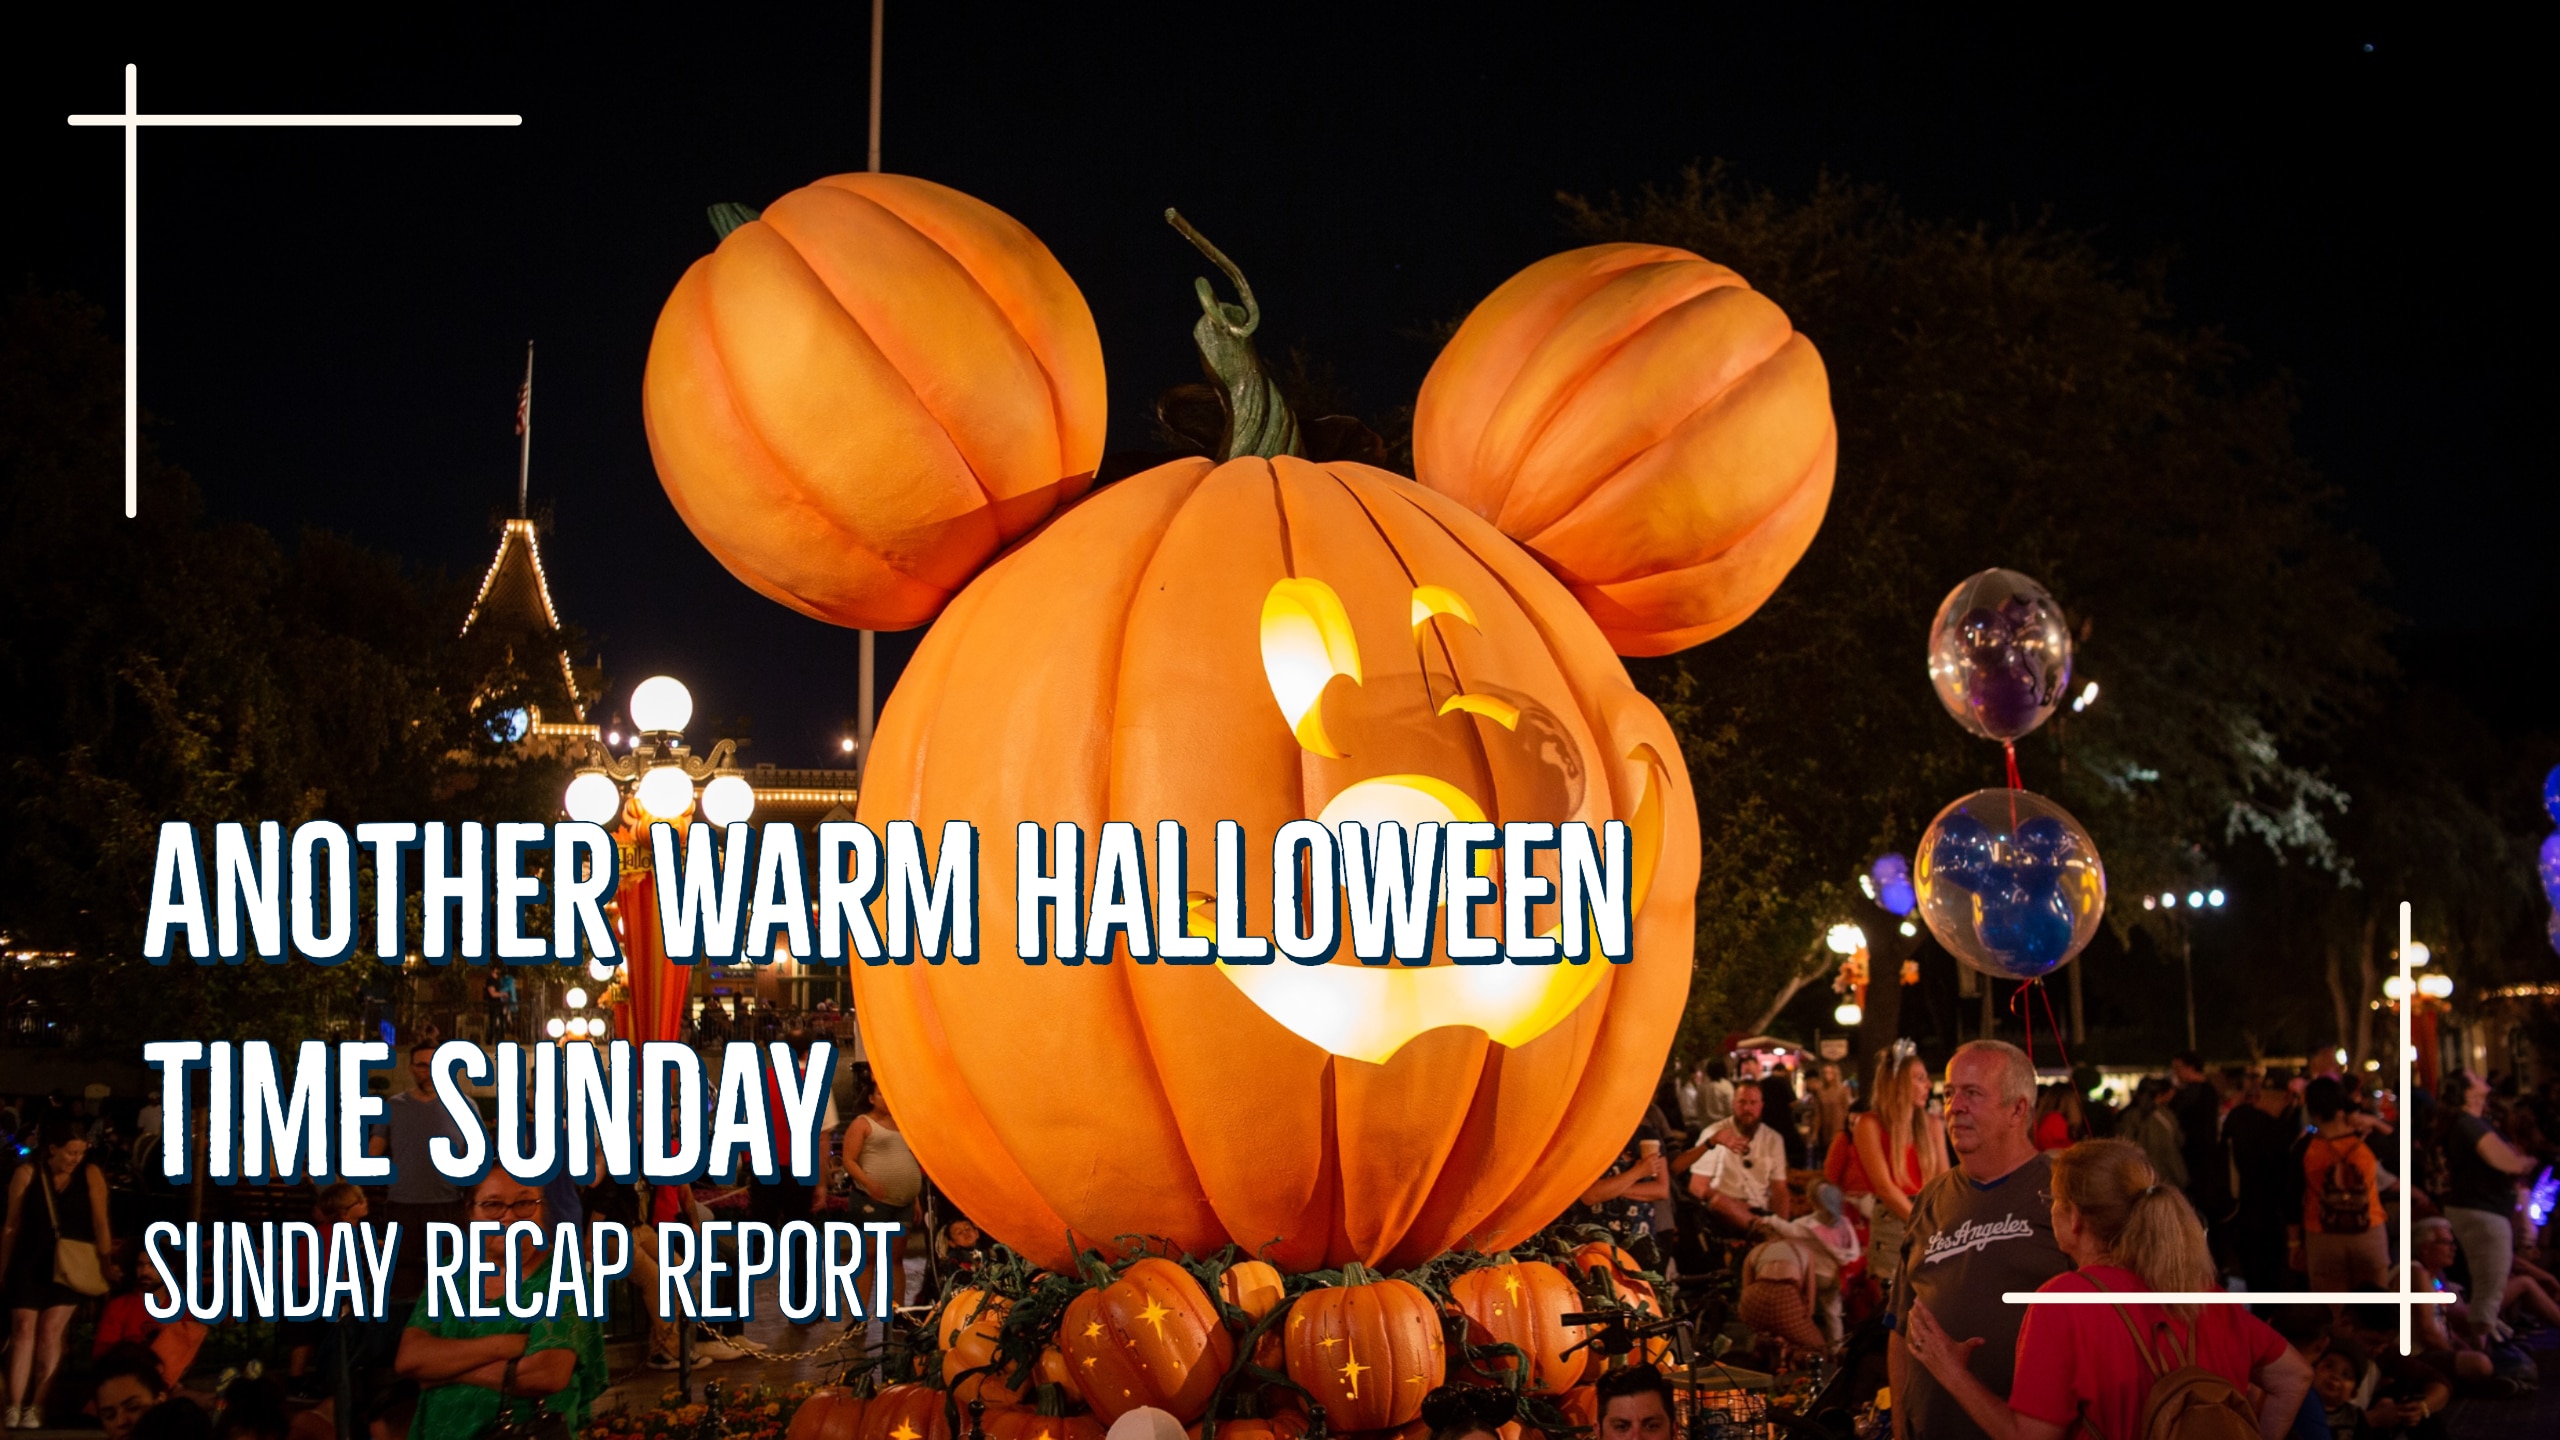 Sunday Recap Report – Another Warm Halloween Time Sunday